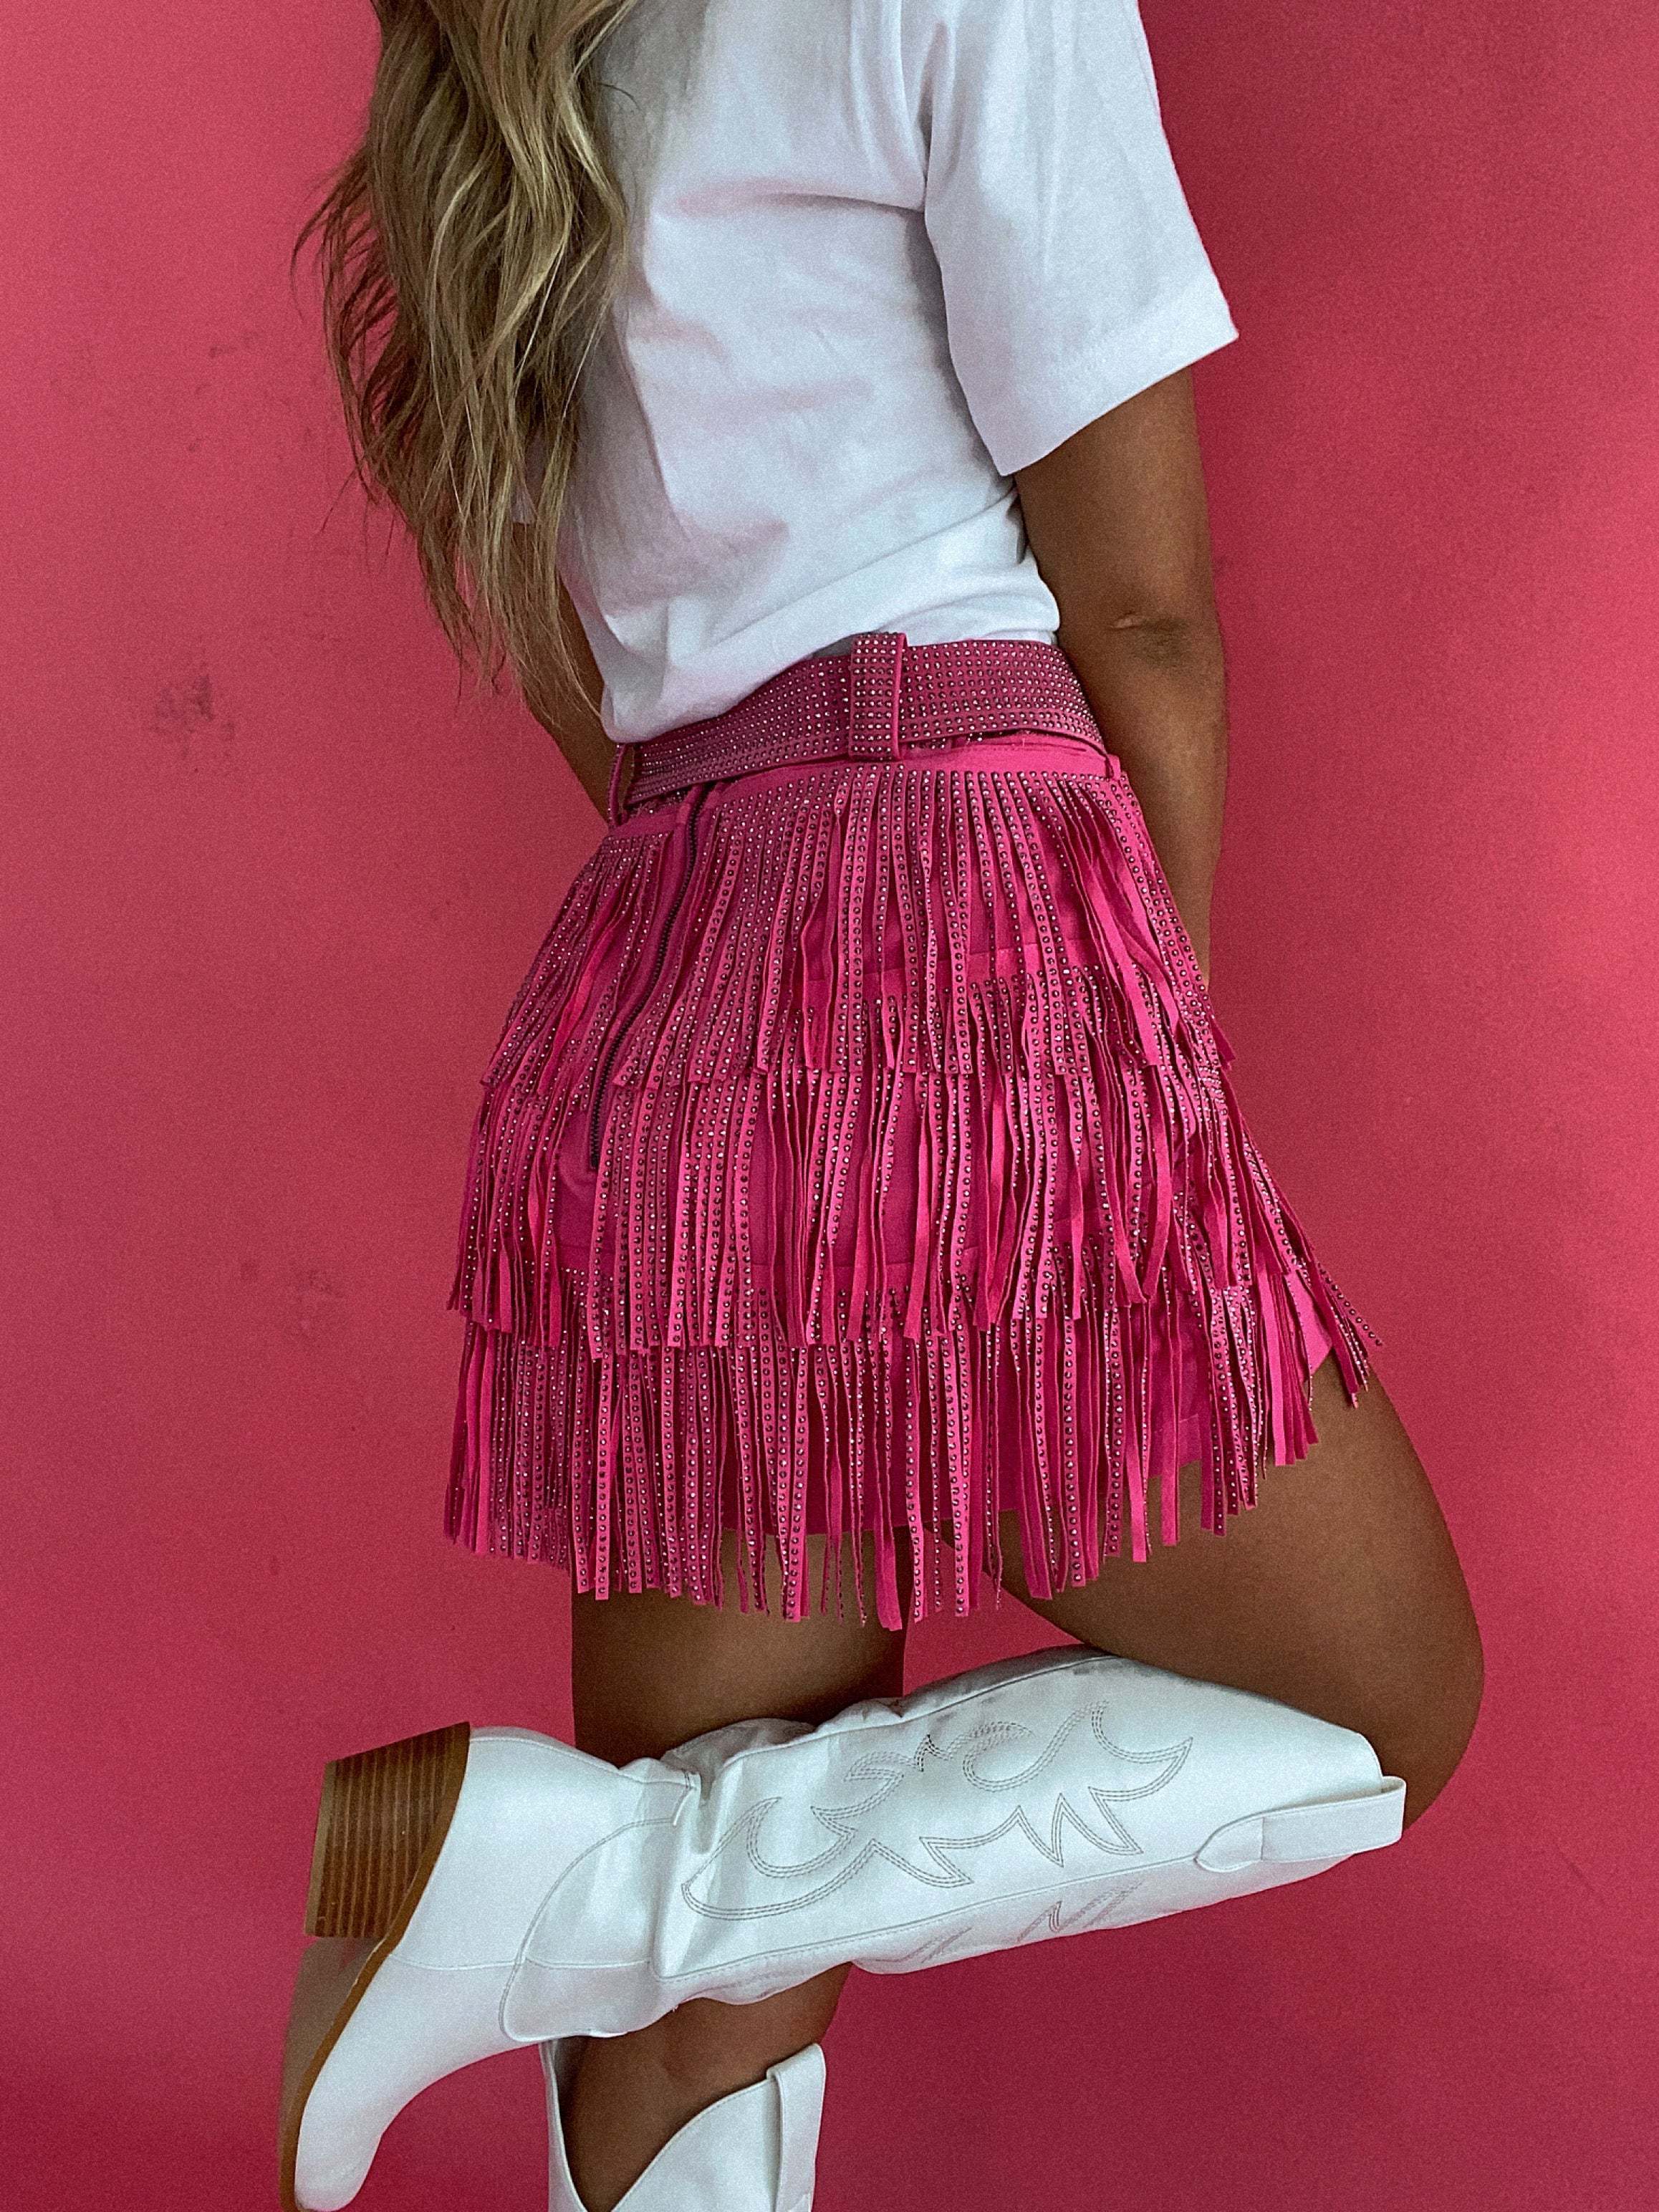 IMPERFECT: Nashville Babe Rhinestone Fringe Mini Skirt- Pink